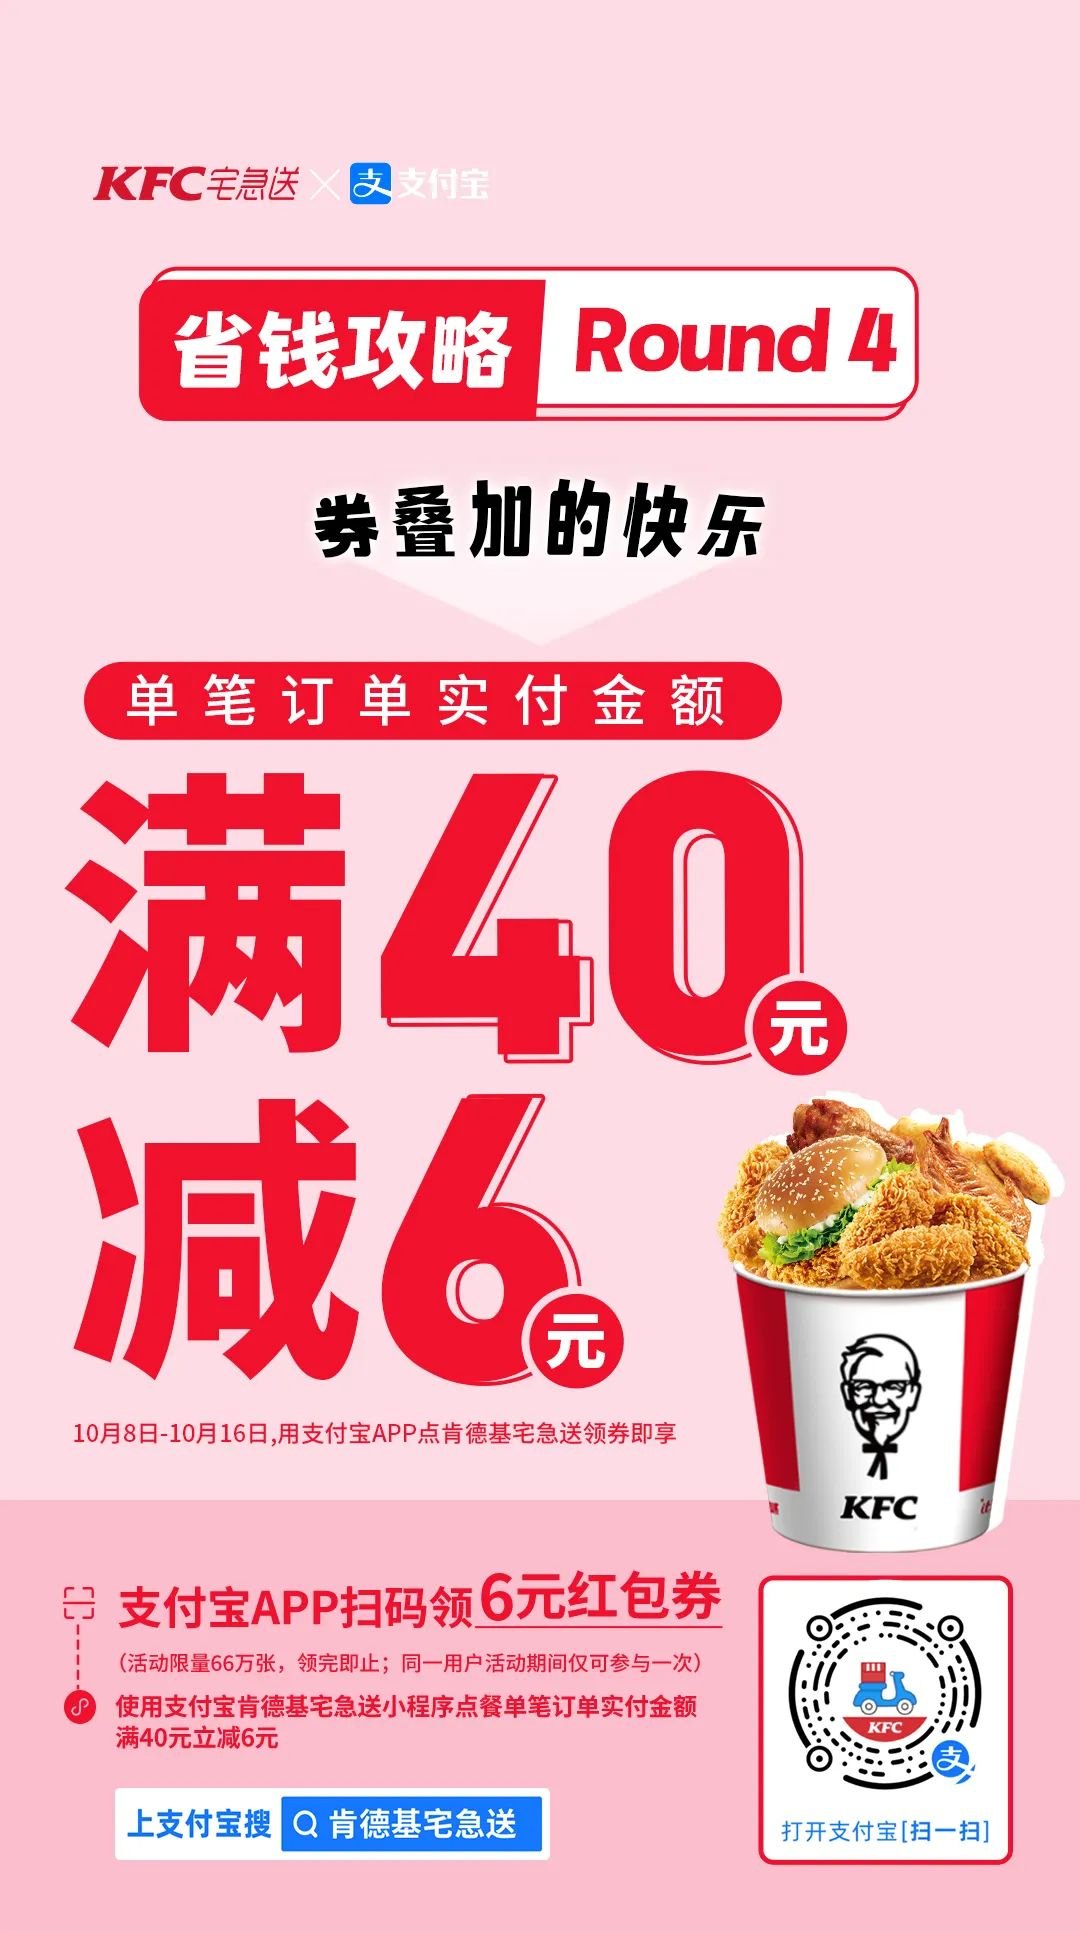 KFC | 假后回归,39.9元十翅一桶也重磅回归!